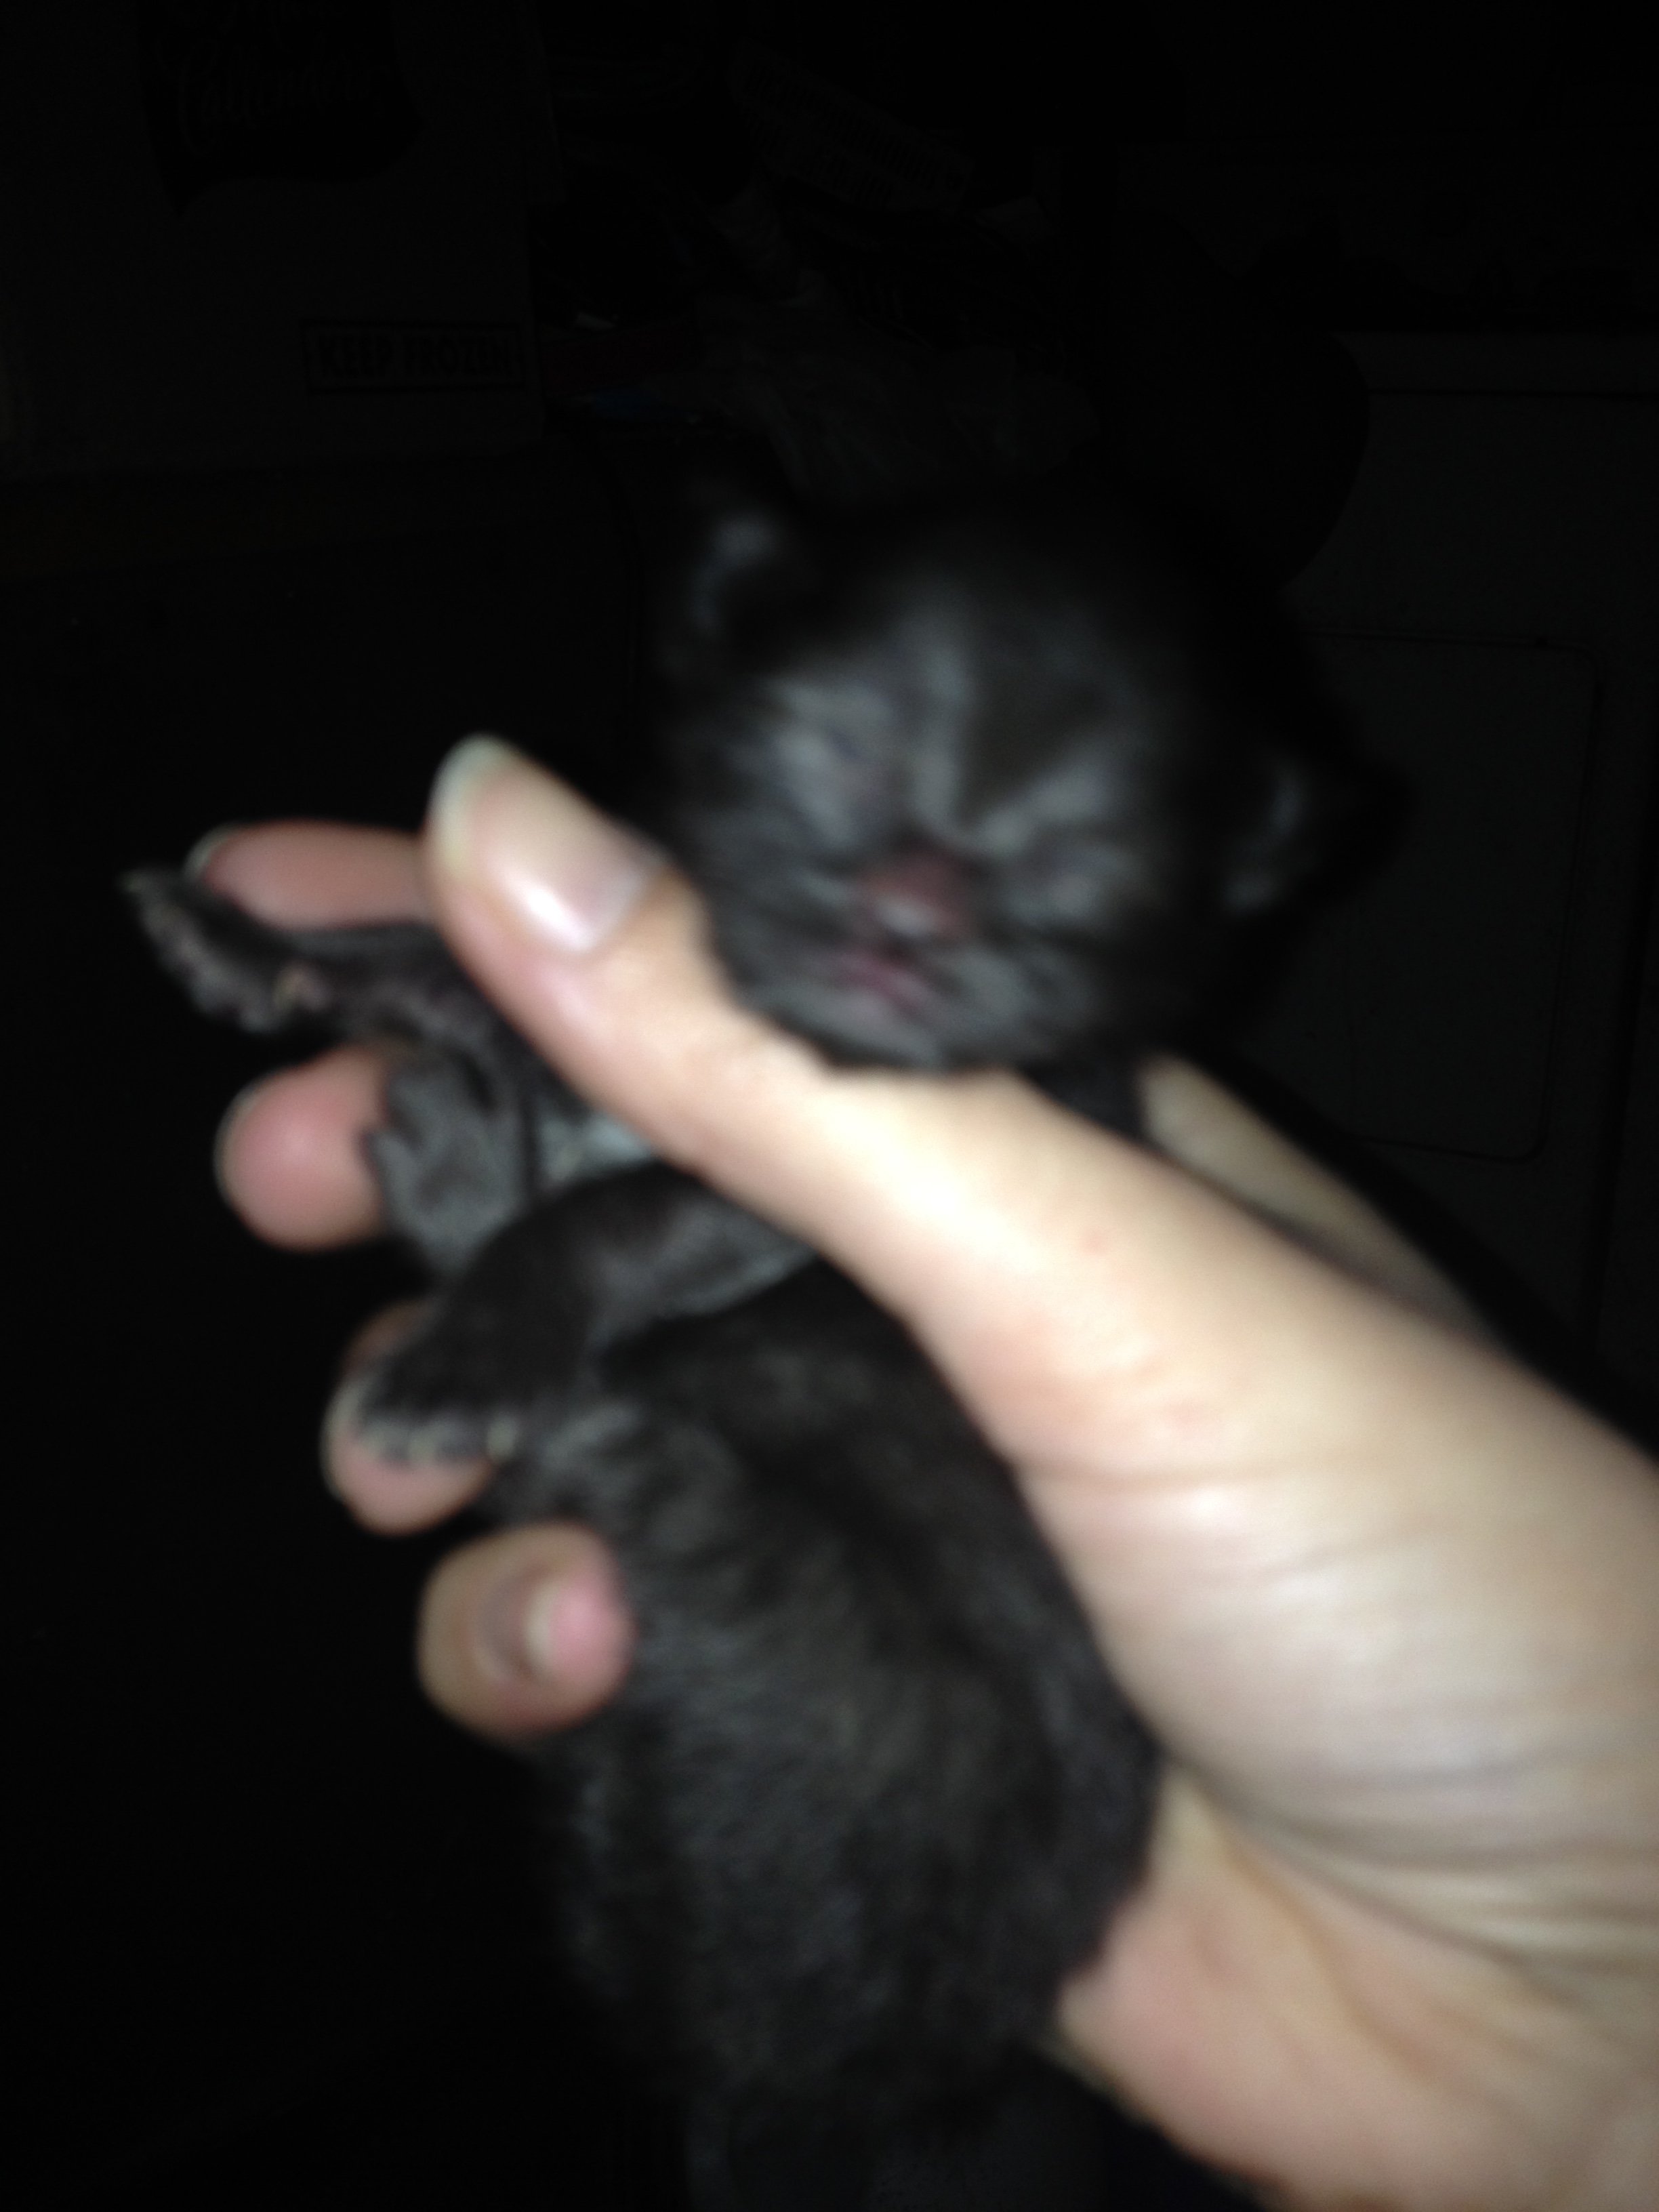 Kittenpics-black1-2-22-2016-1210am